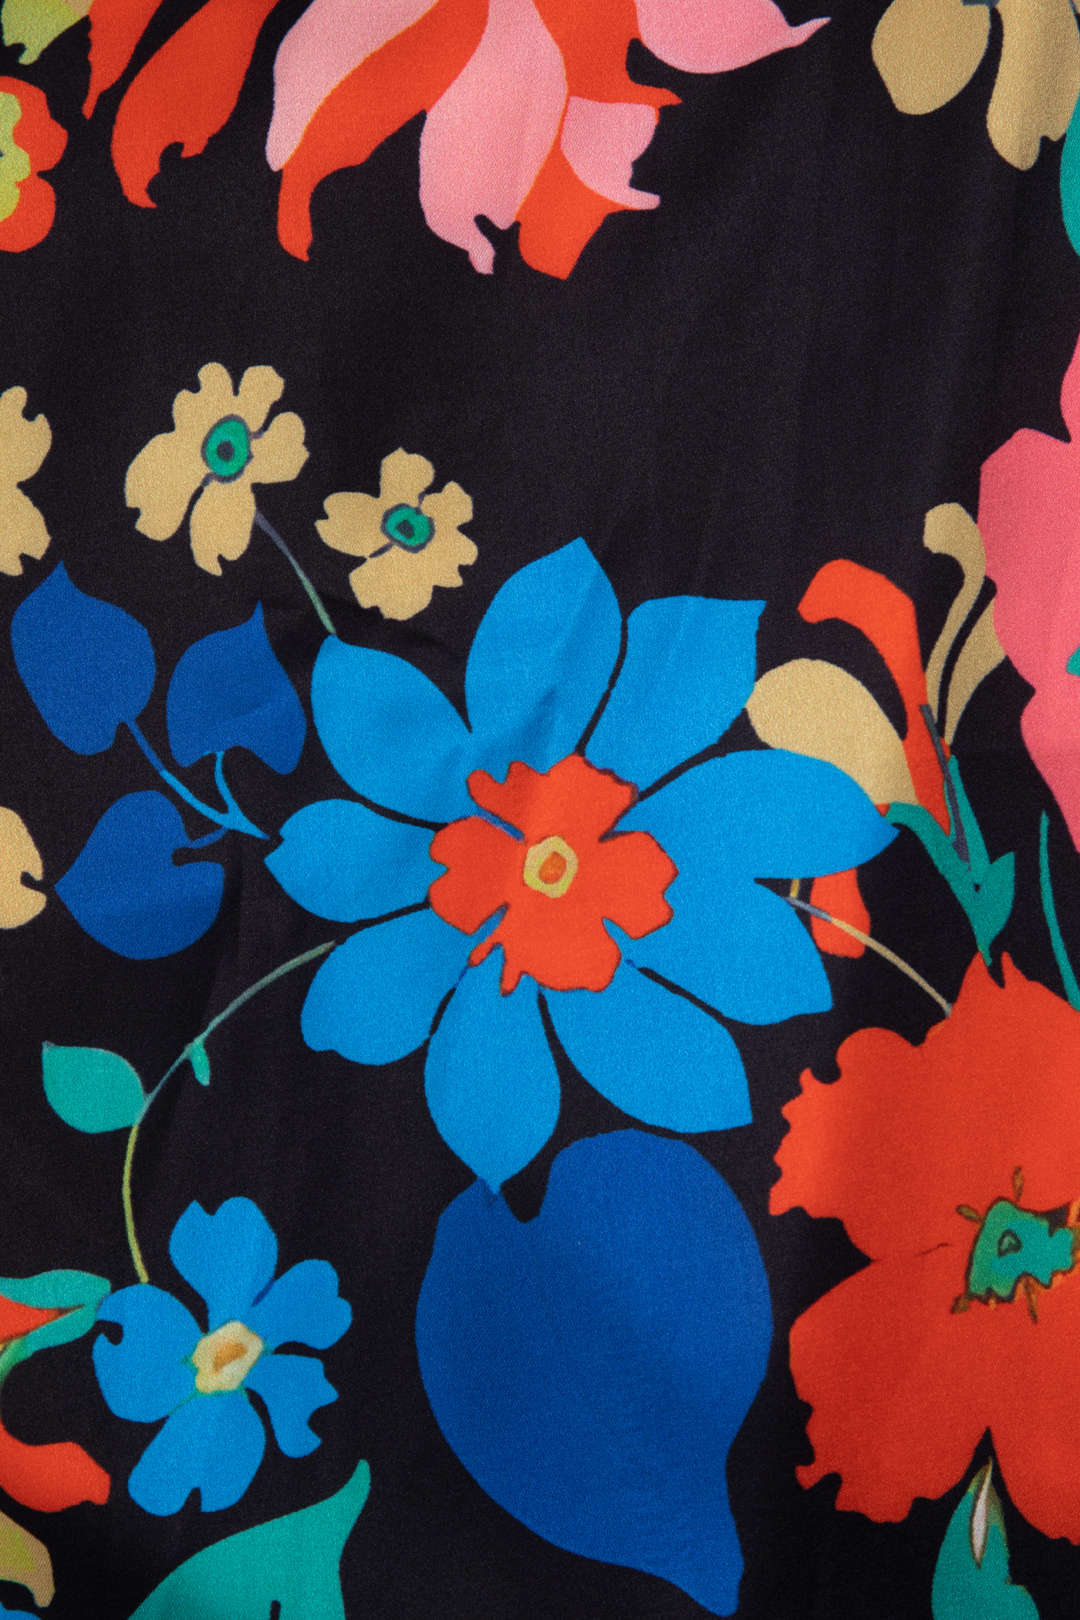 Floral Print Lace Trim V-neck Maxi Dress